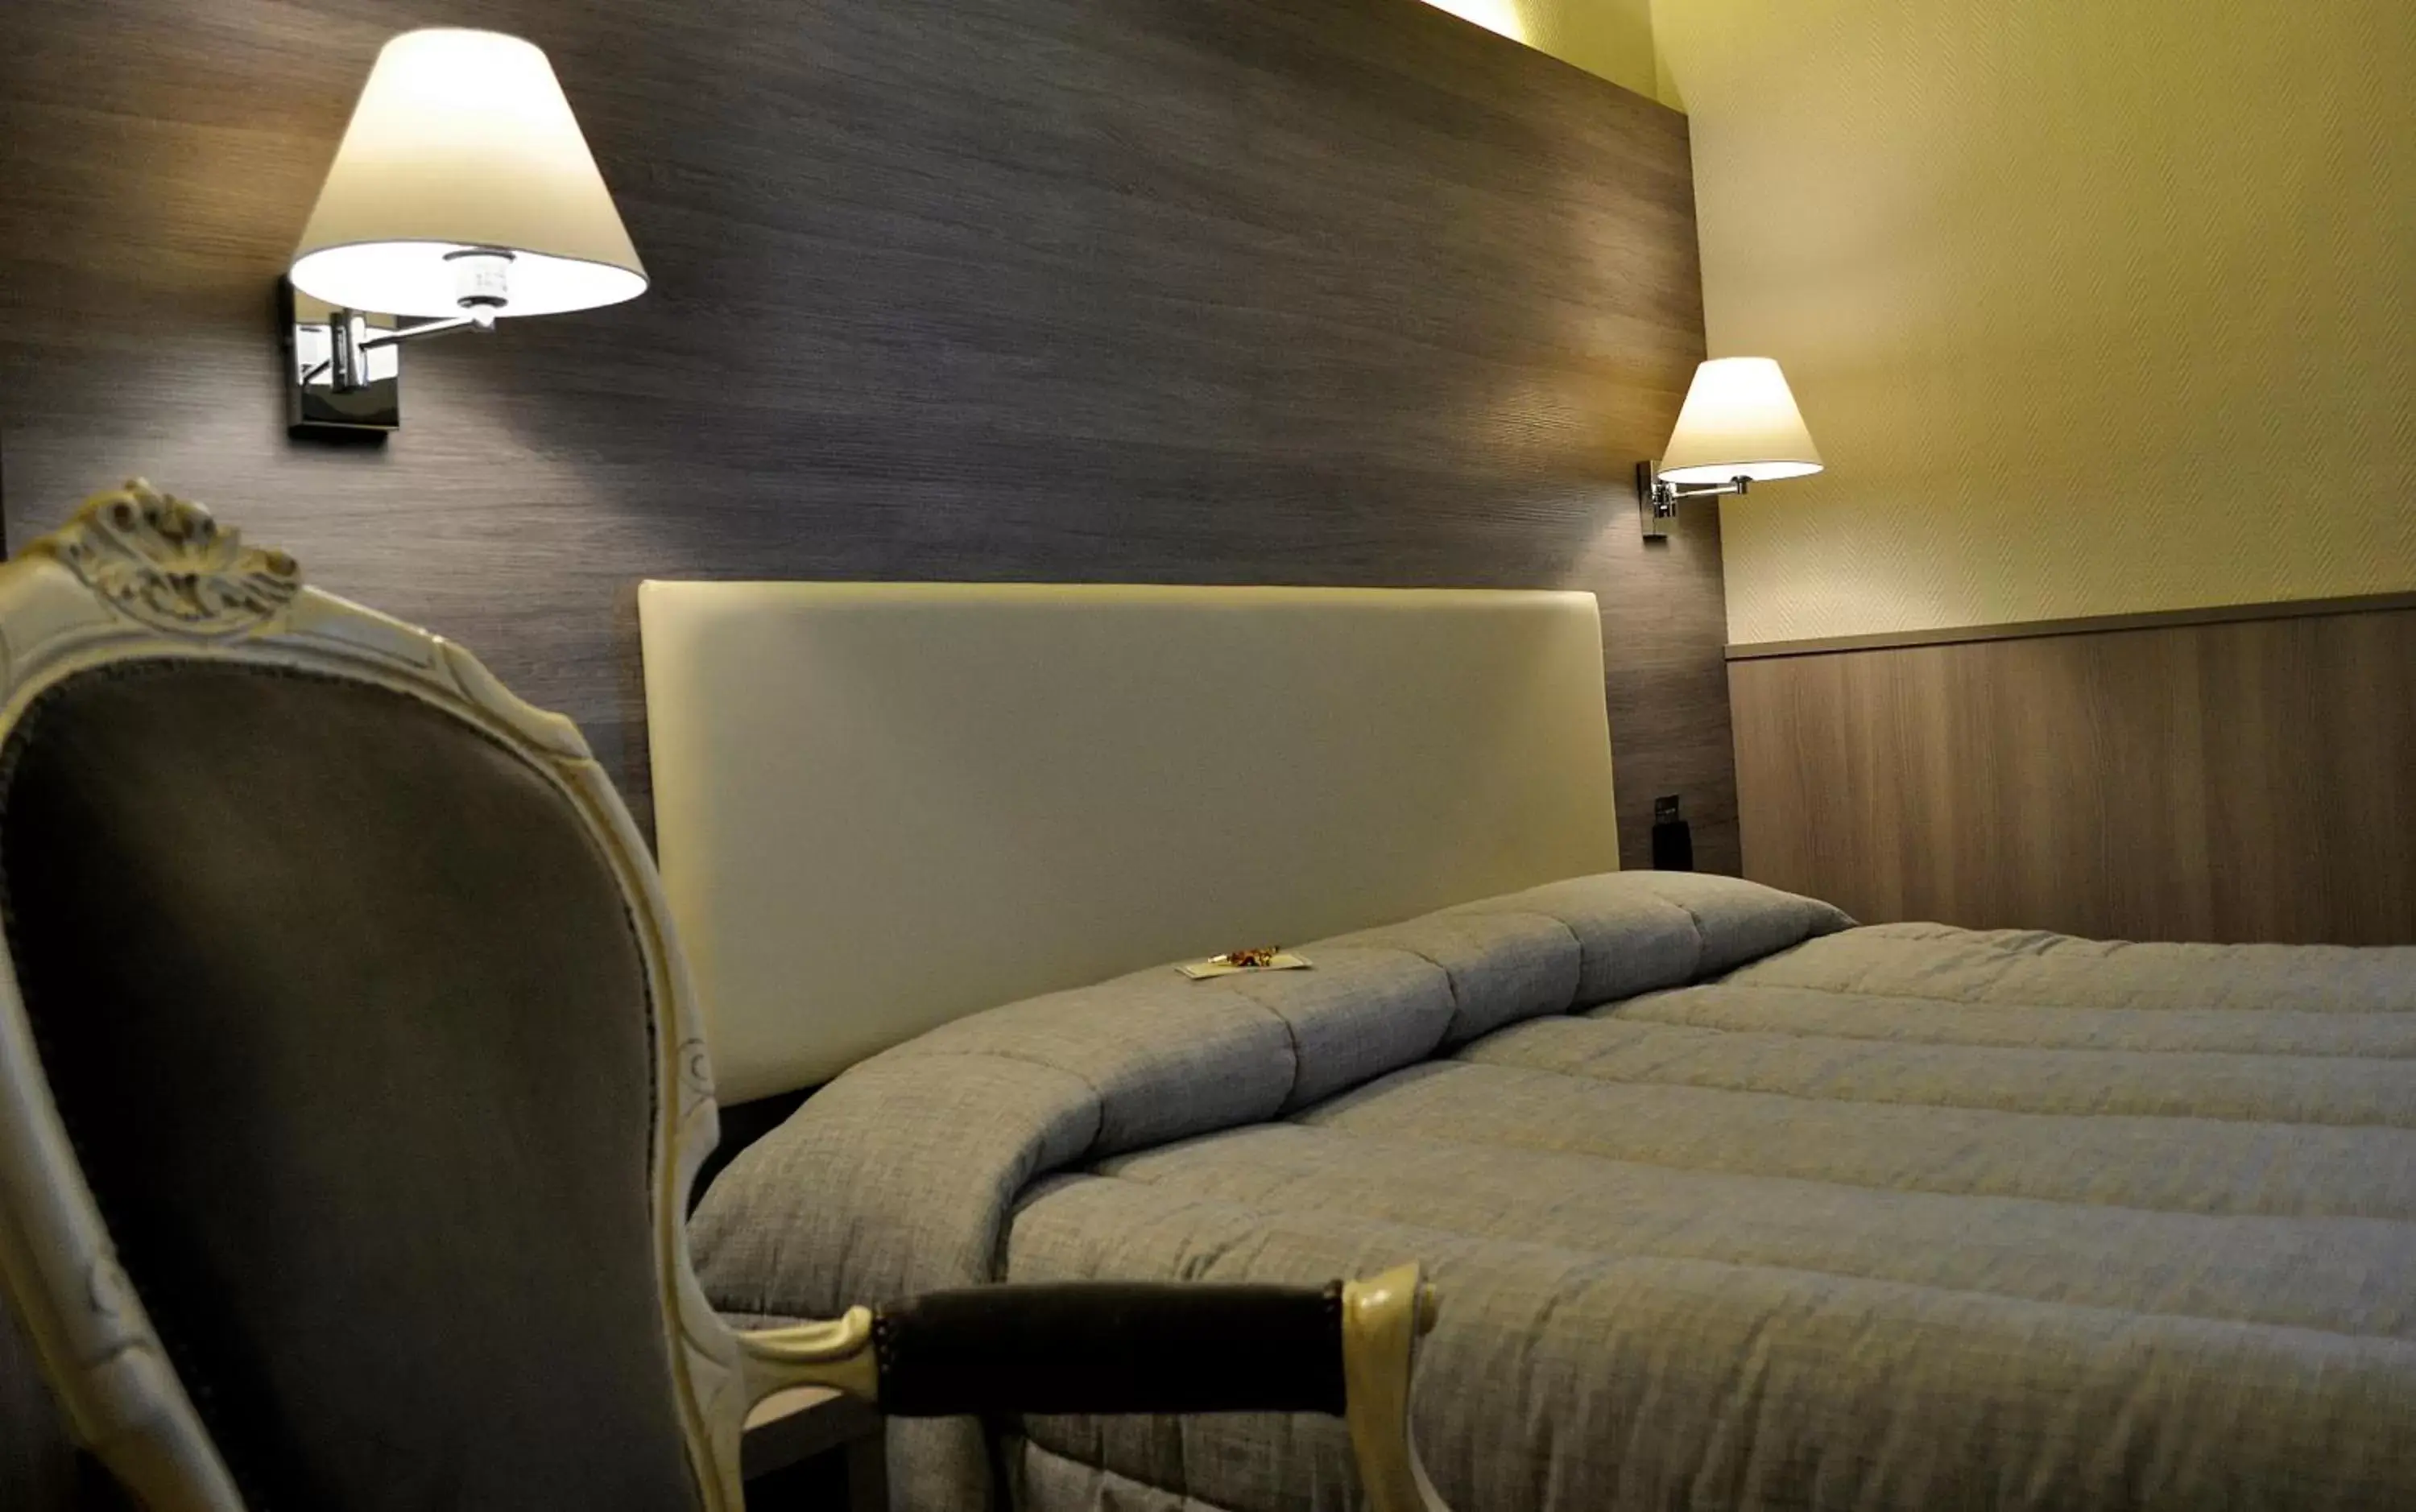 Bedroom, Bed in Hotel Est Piombino